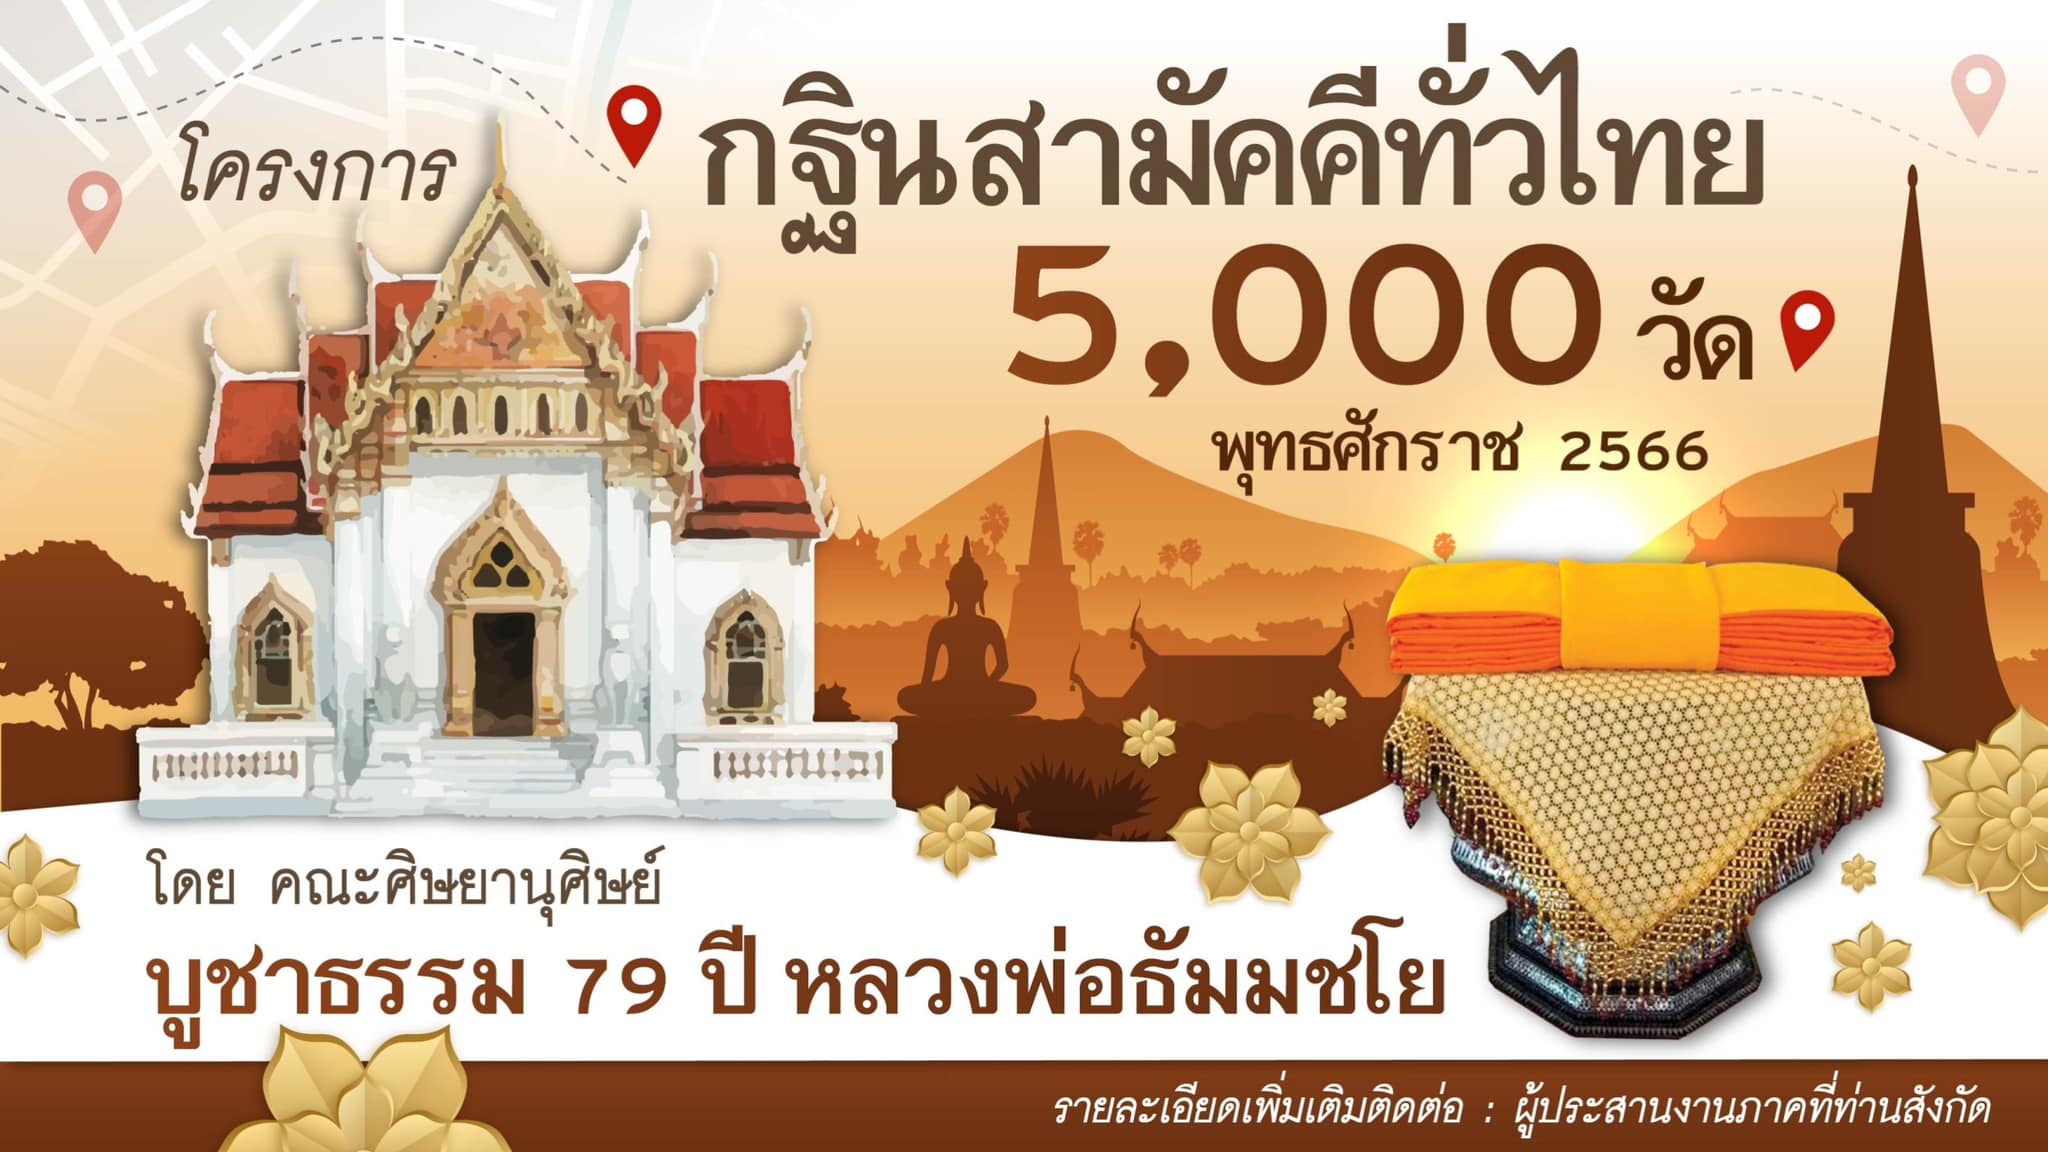 โครงการกฐินสามัคคีทั่วไทย 5,000 วัด พุทธศักราช 2566 โดย คณะศิษยานุศิษย์ บูชาธรรม 79 ปี หลวงพ่อธัมมชโย